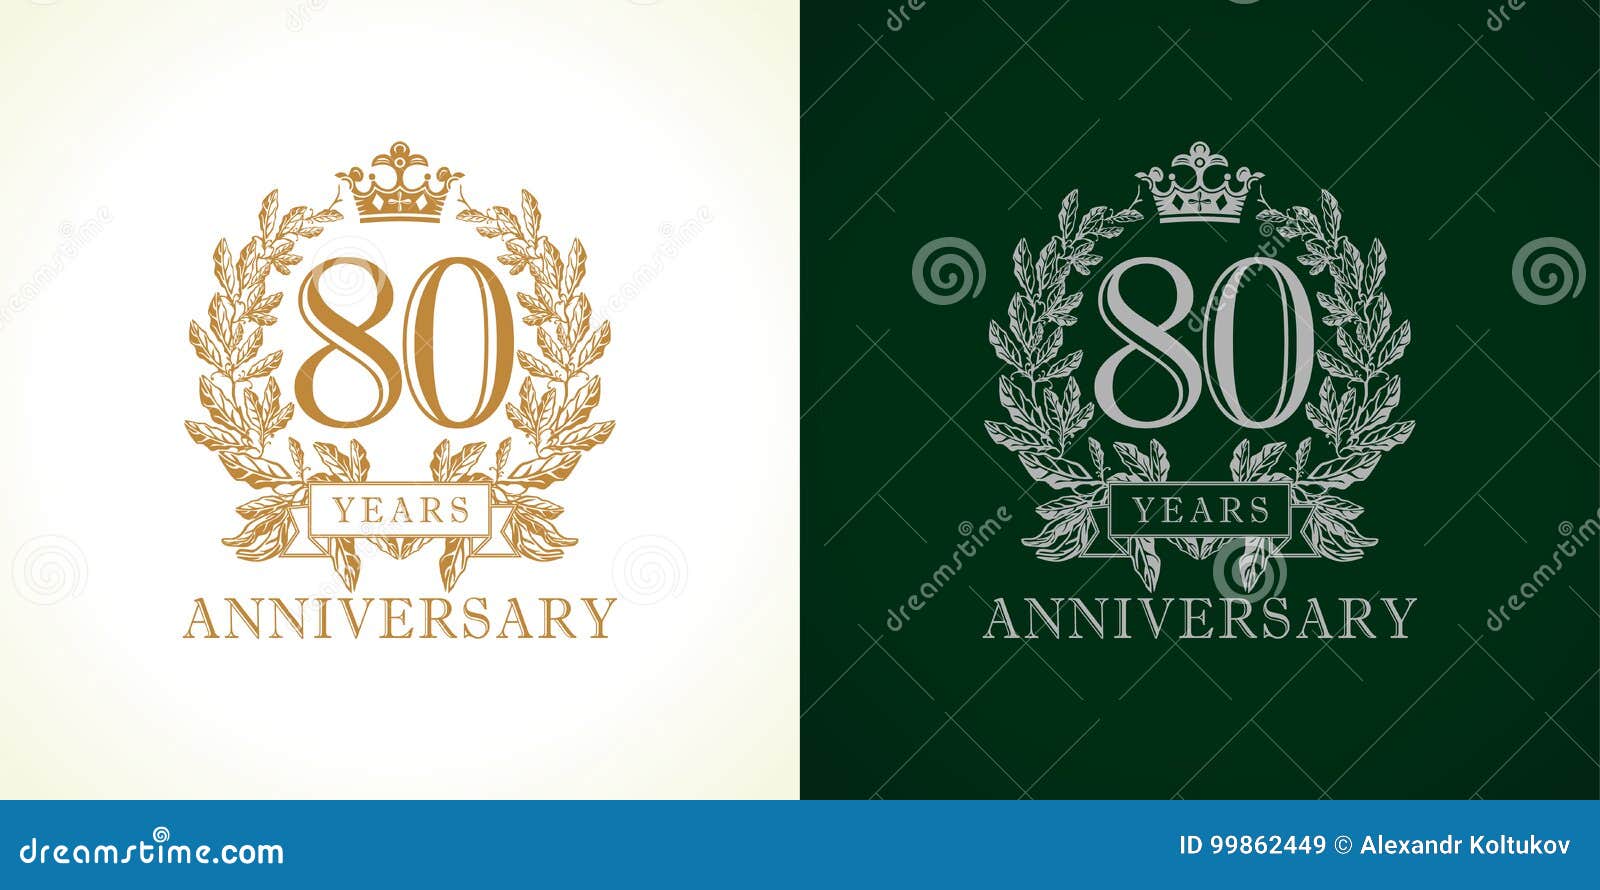 80 anniversary luxury logo.